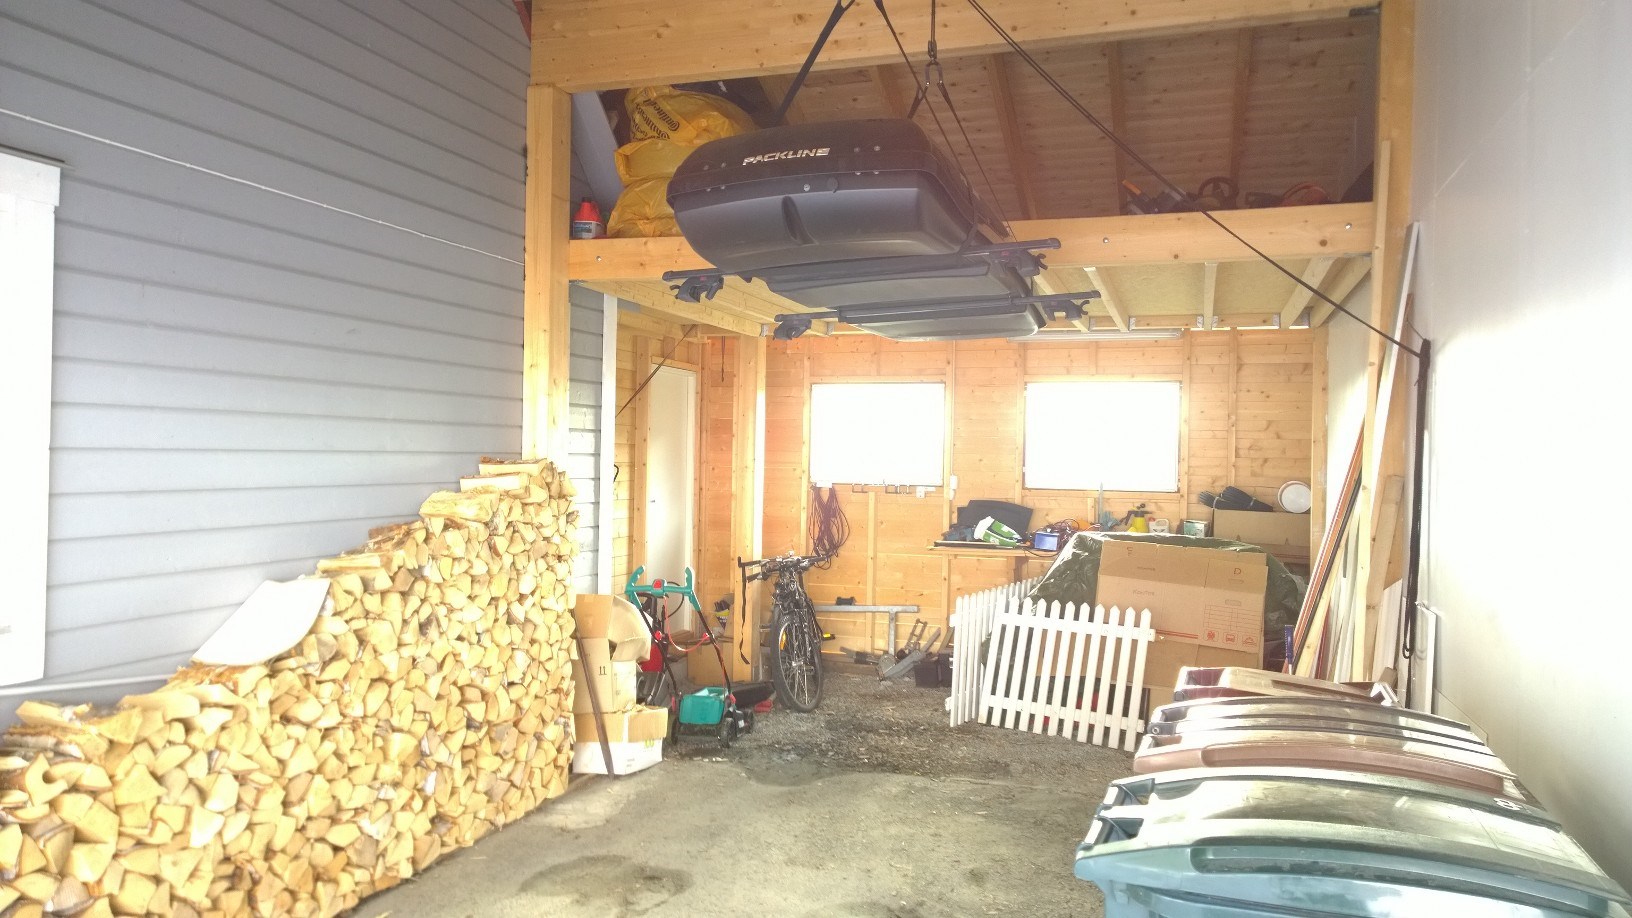 Bygge isolert bod i carport/garasje - Løsninger? - WP_20150907_18_01_12_Pro.jpg - Grizzly